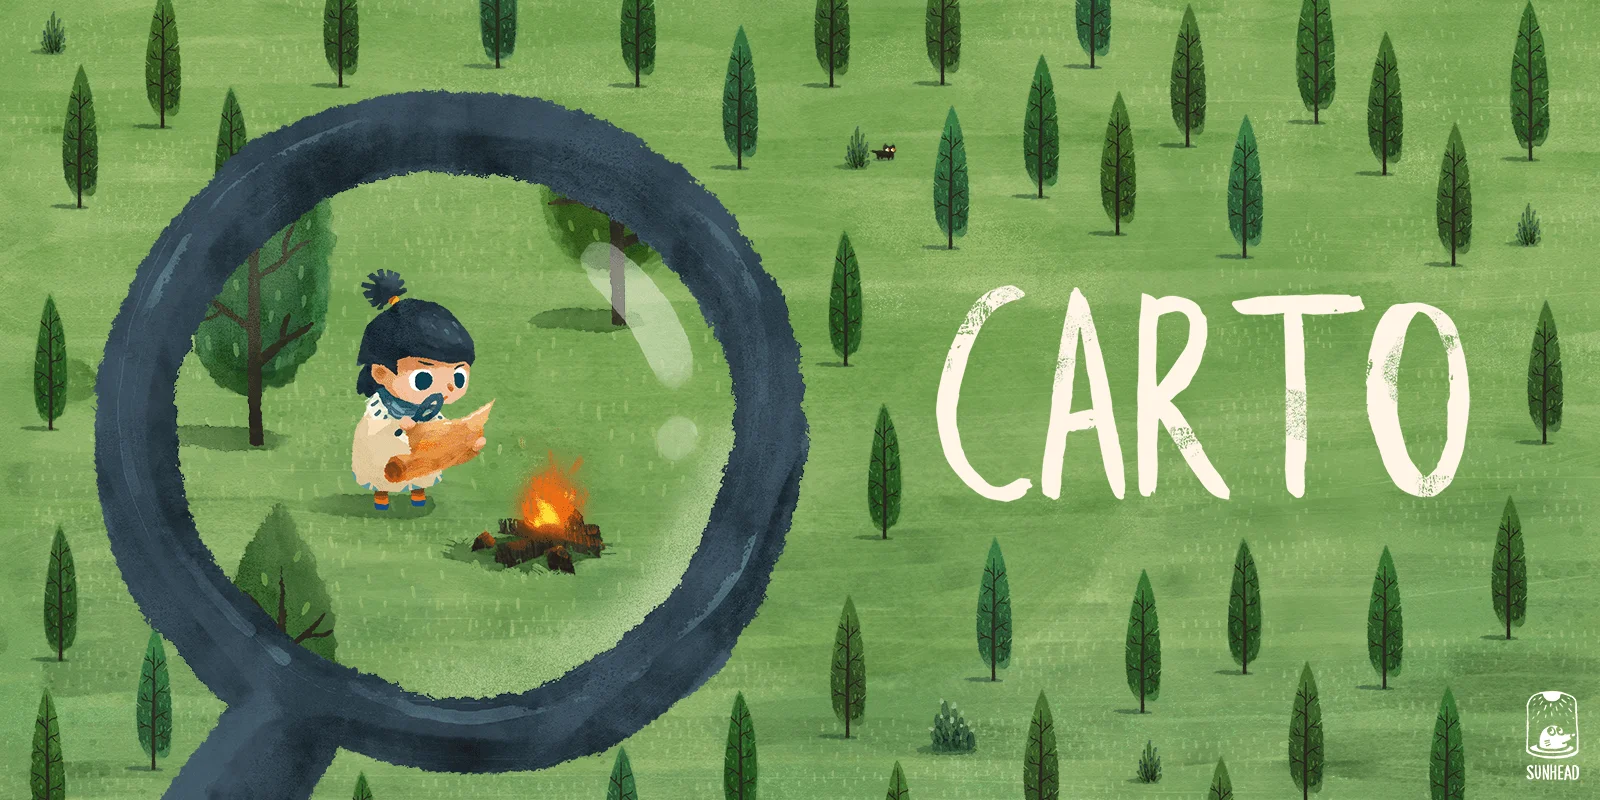 《说剑》团队新作《Carto》将于10月28日登陆Steam